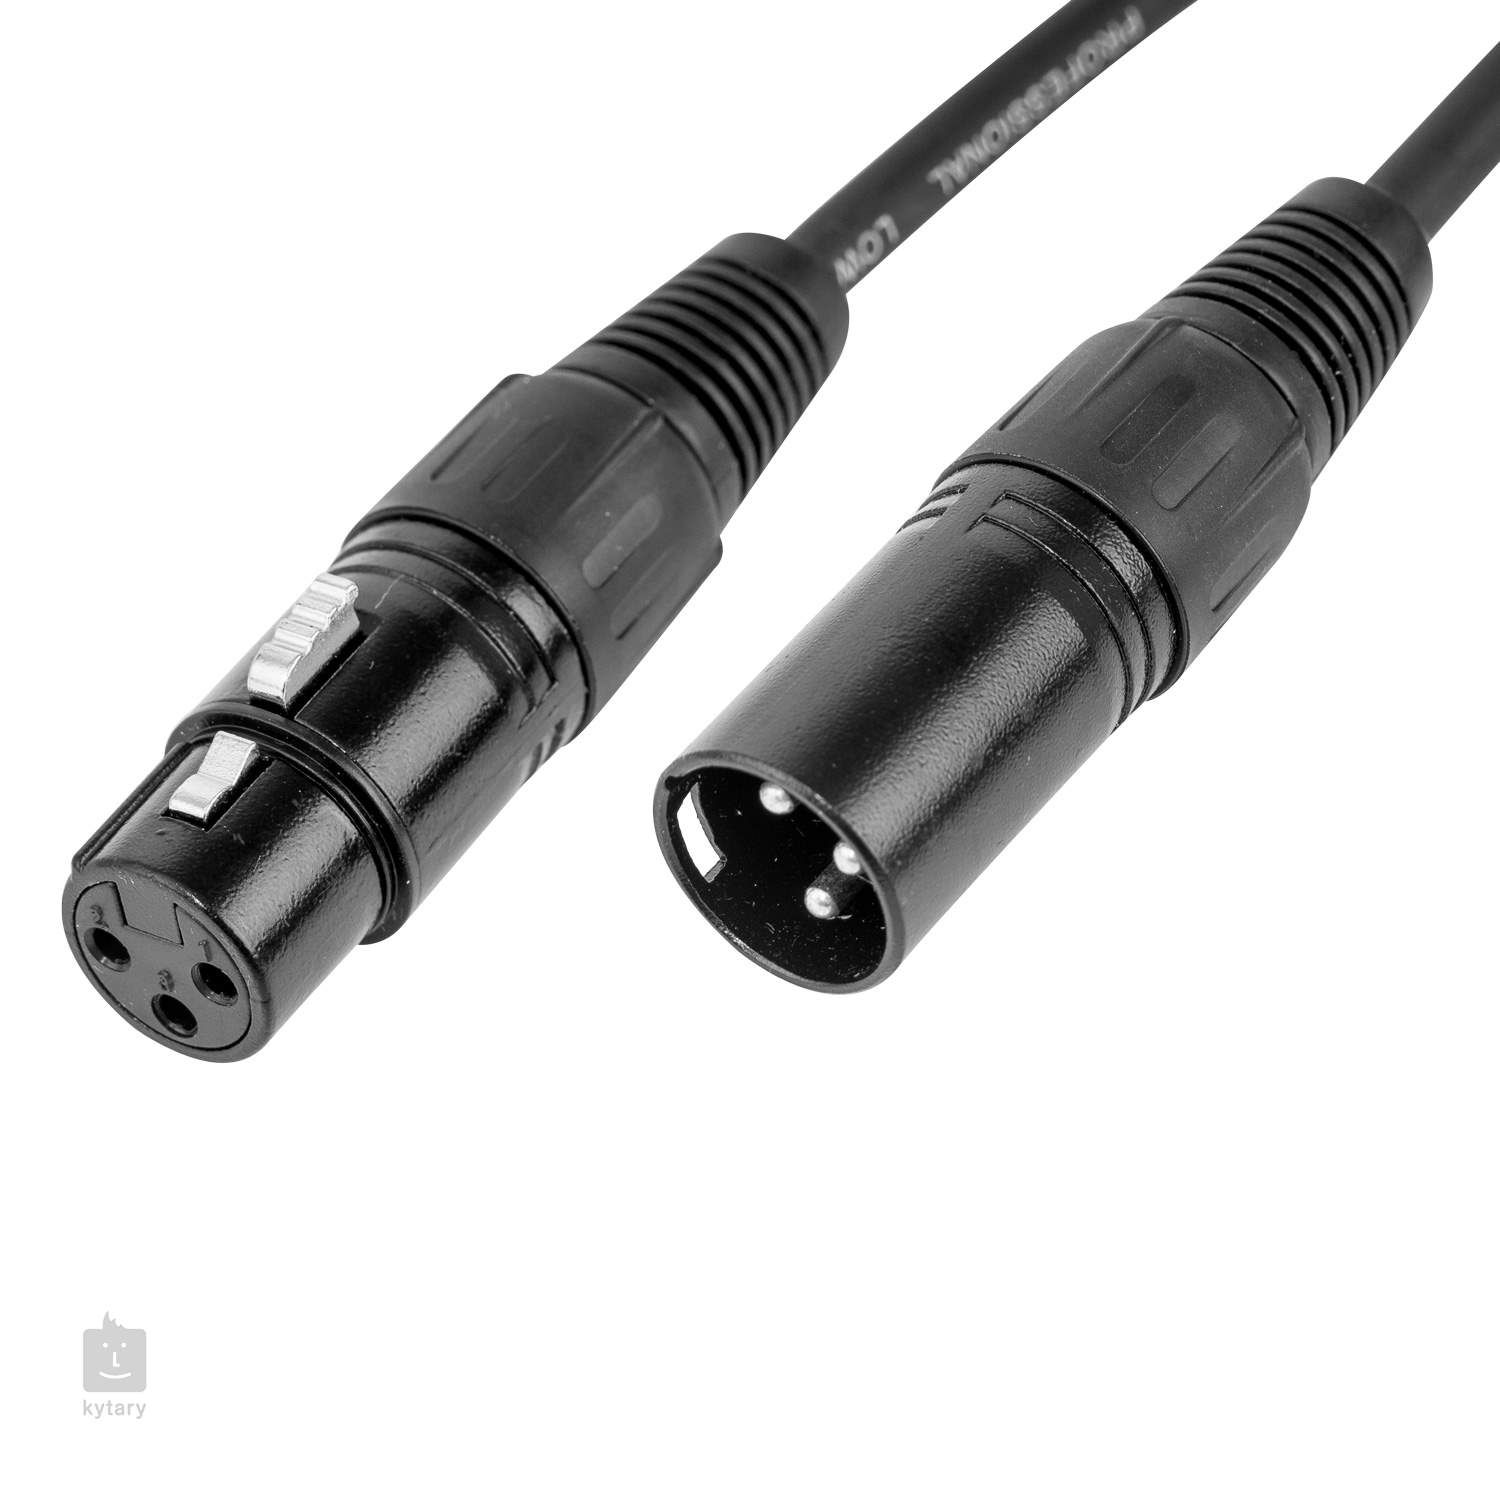 CASCHA Microphone Cable XLR 6 m Câble microphonique